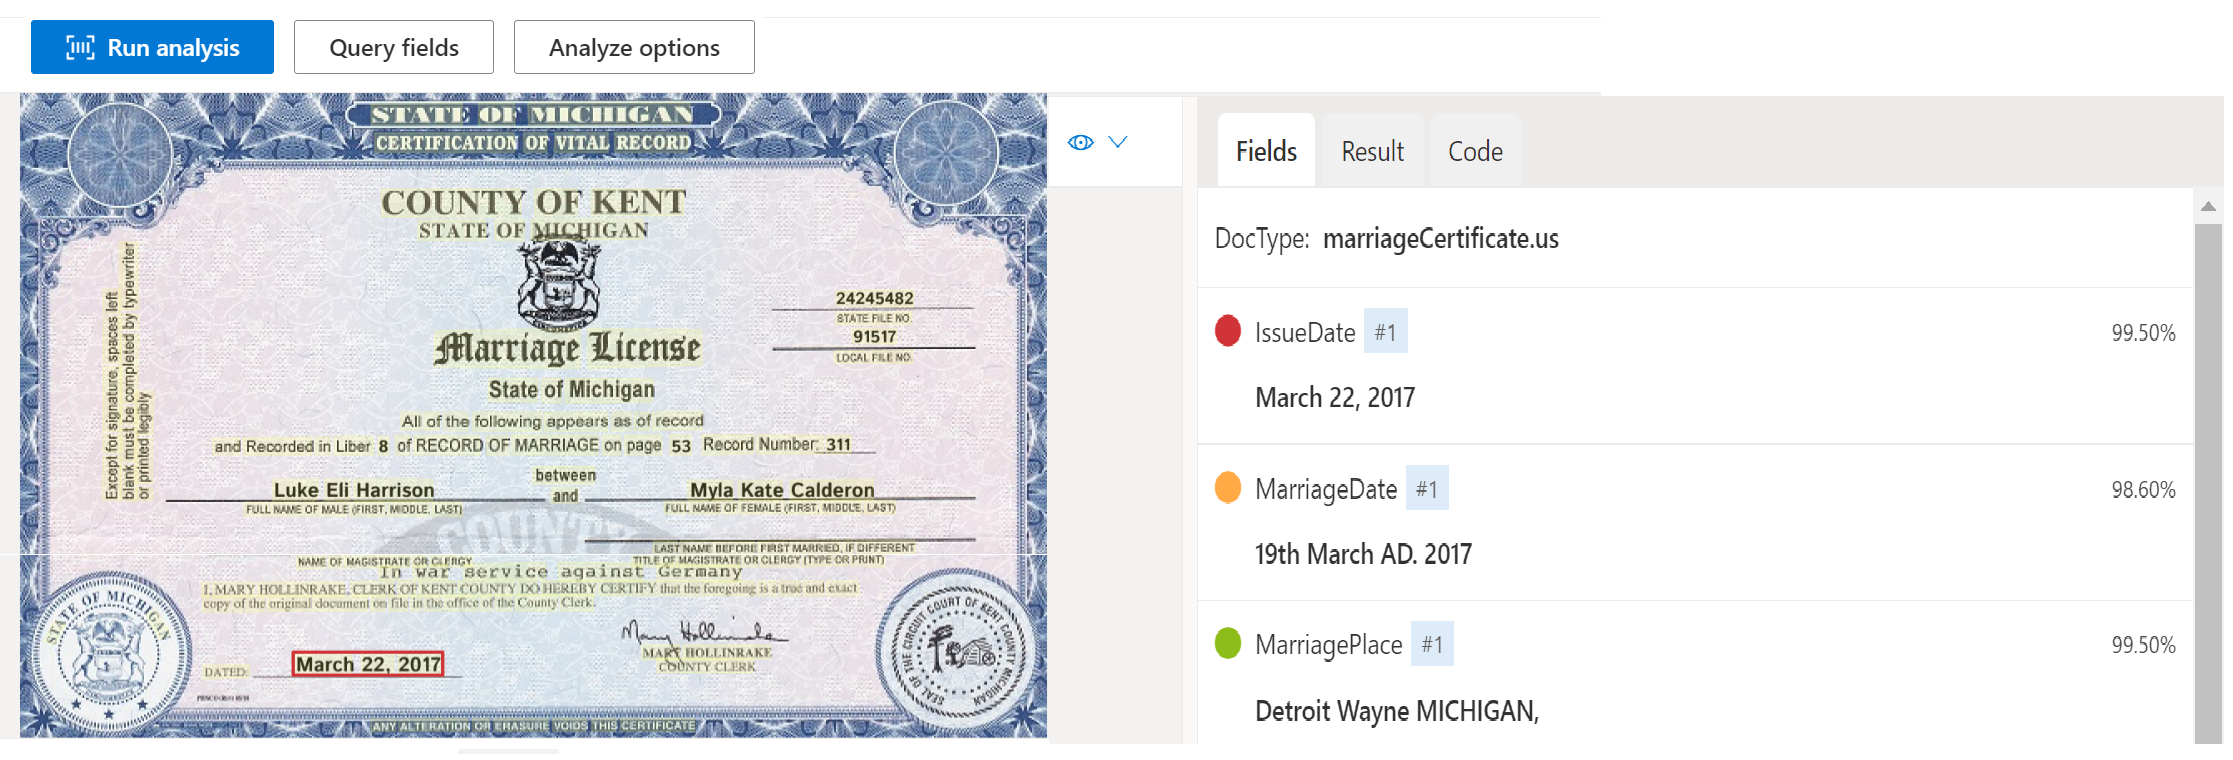 Captura de tela da Análise do modelo de documento de certidão de casamento usando o Estúdio de Informação de Documentos.